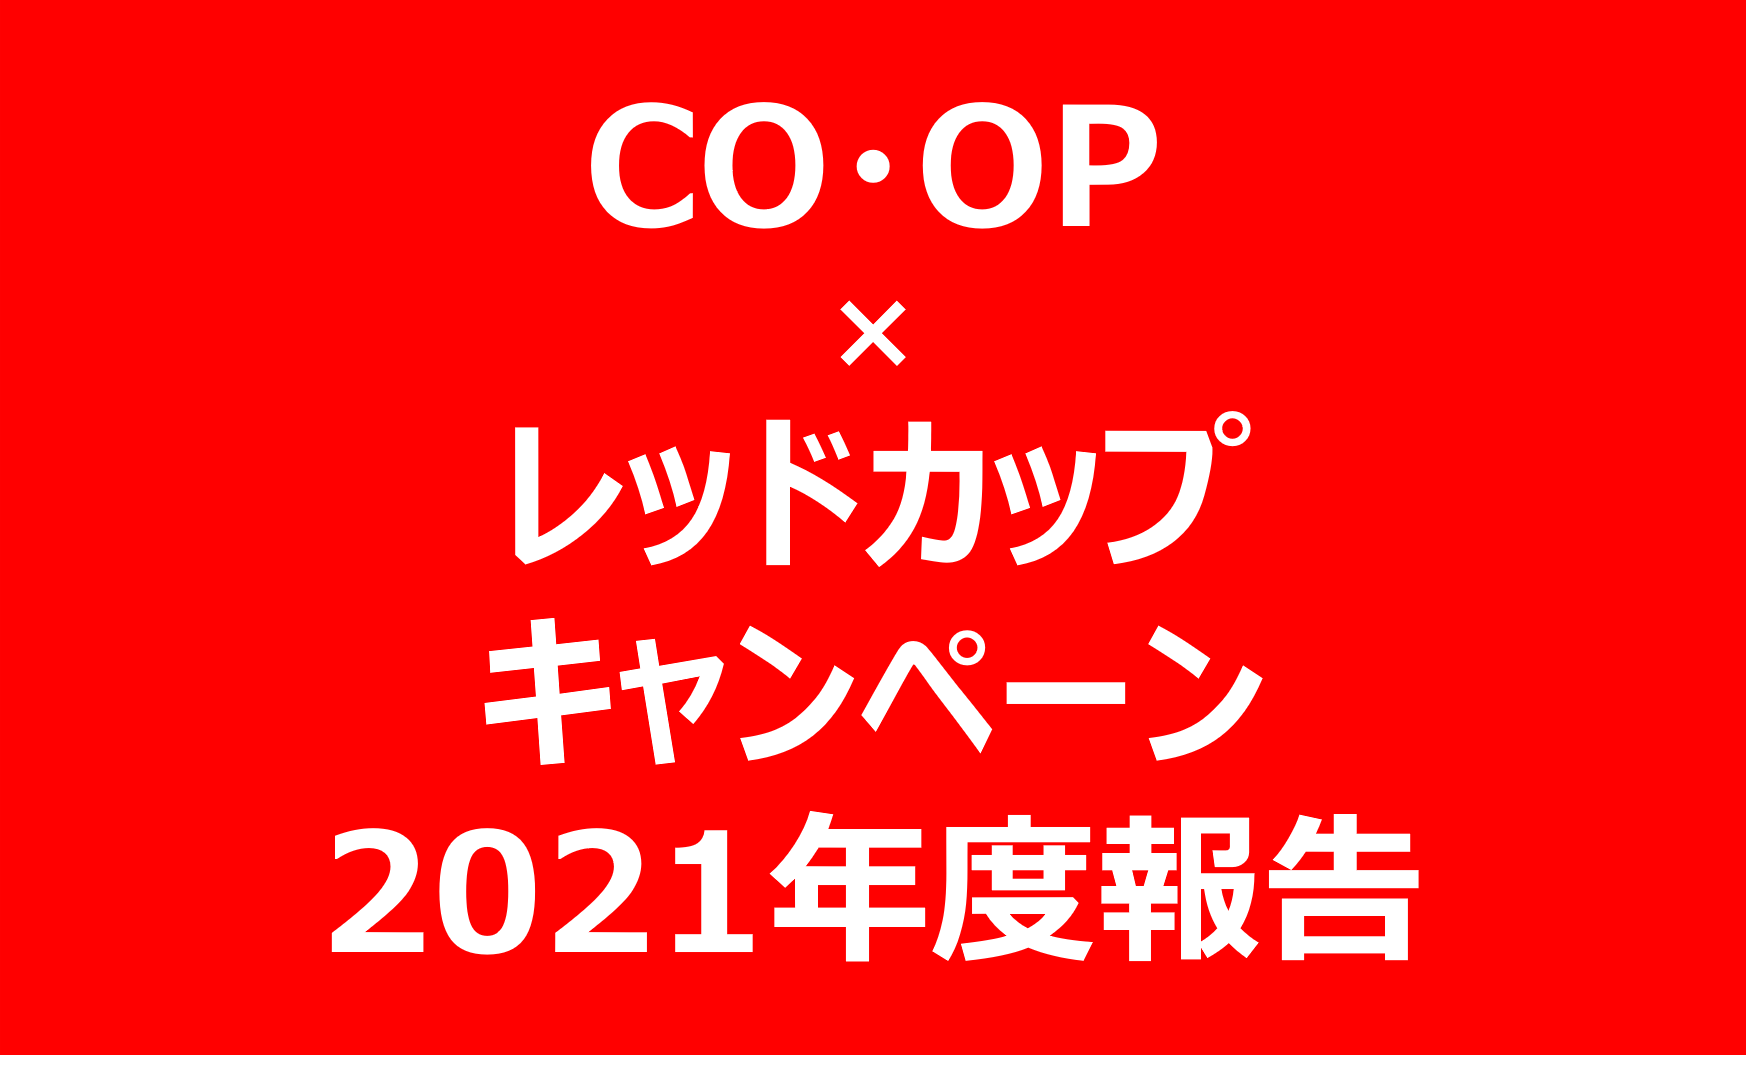 CO·OP×レッドカップキャンペーン2021年度寄付金額をお知らせします。